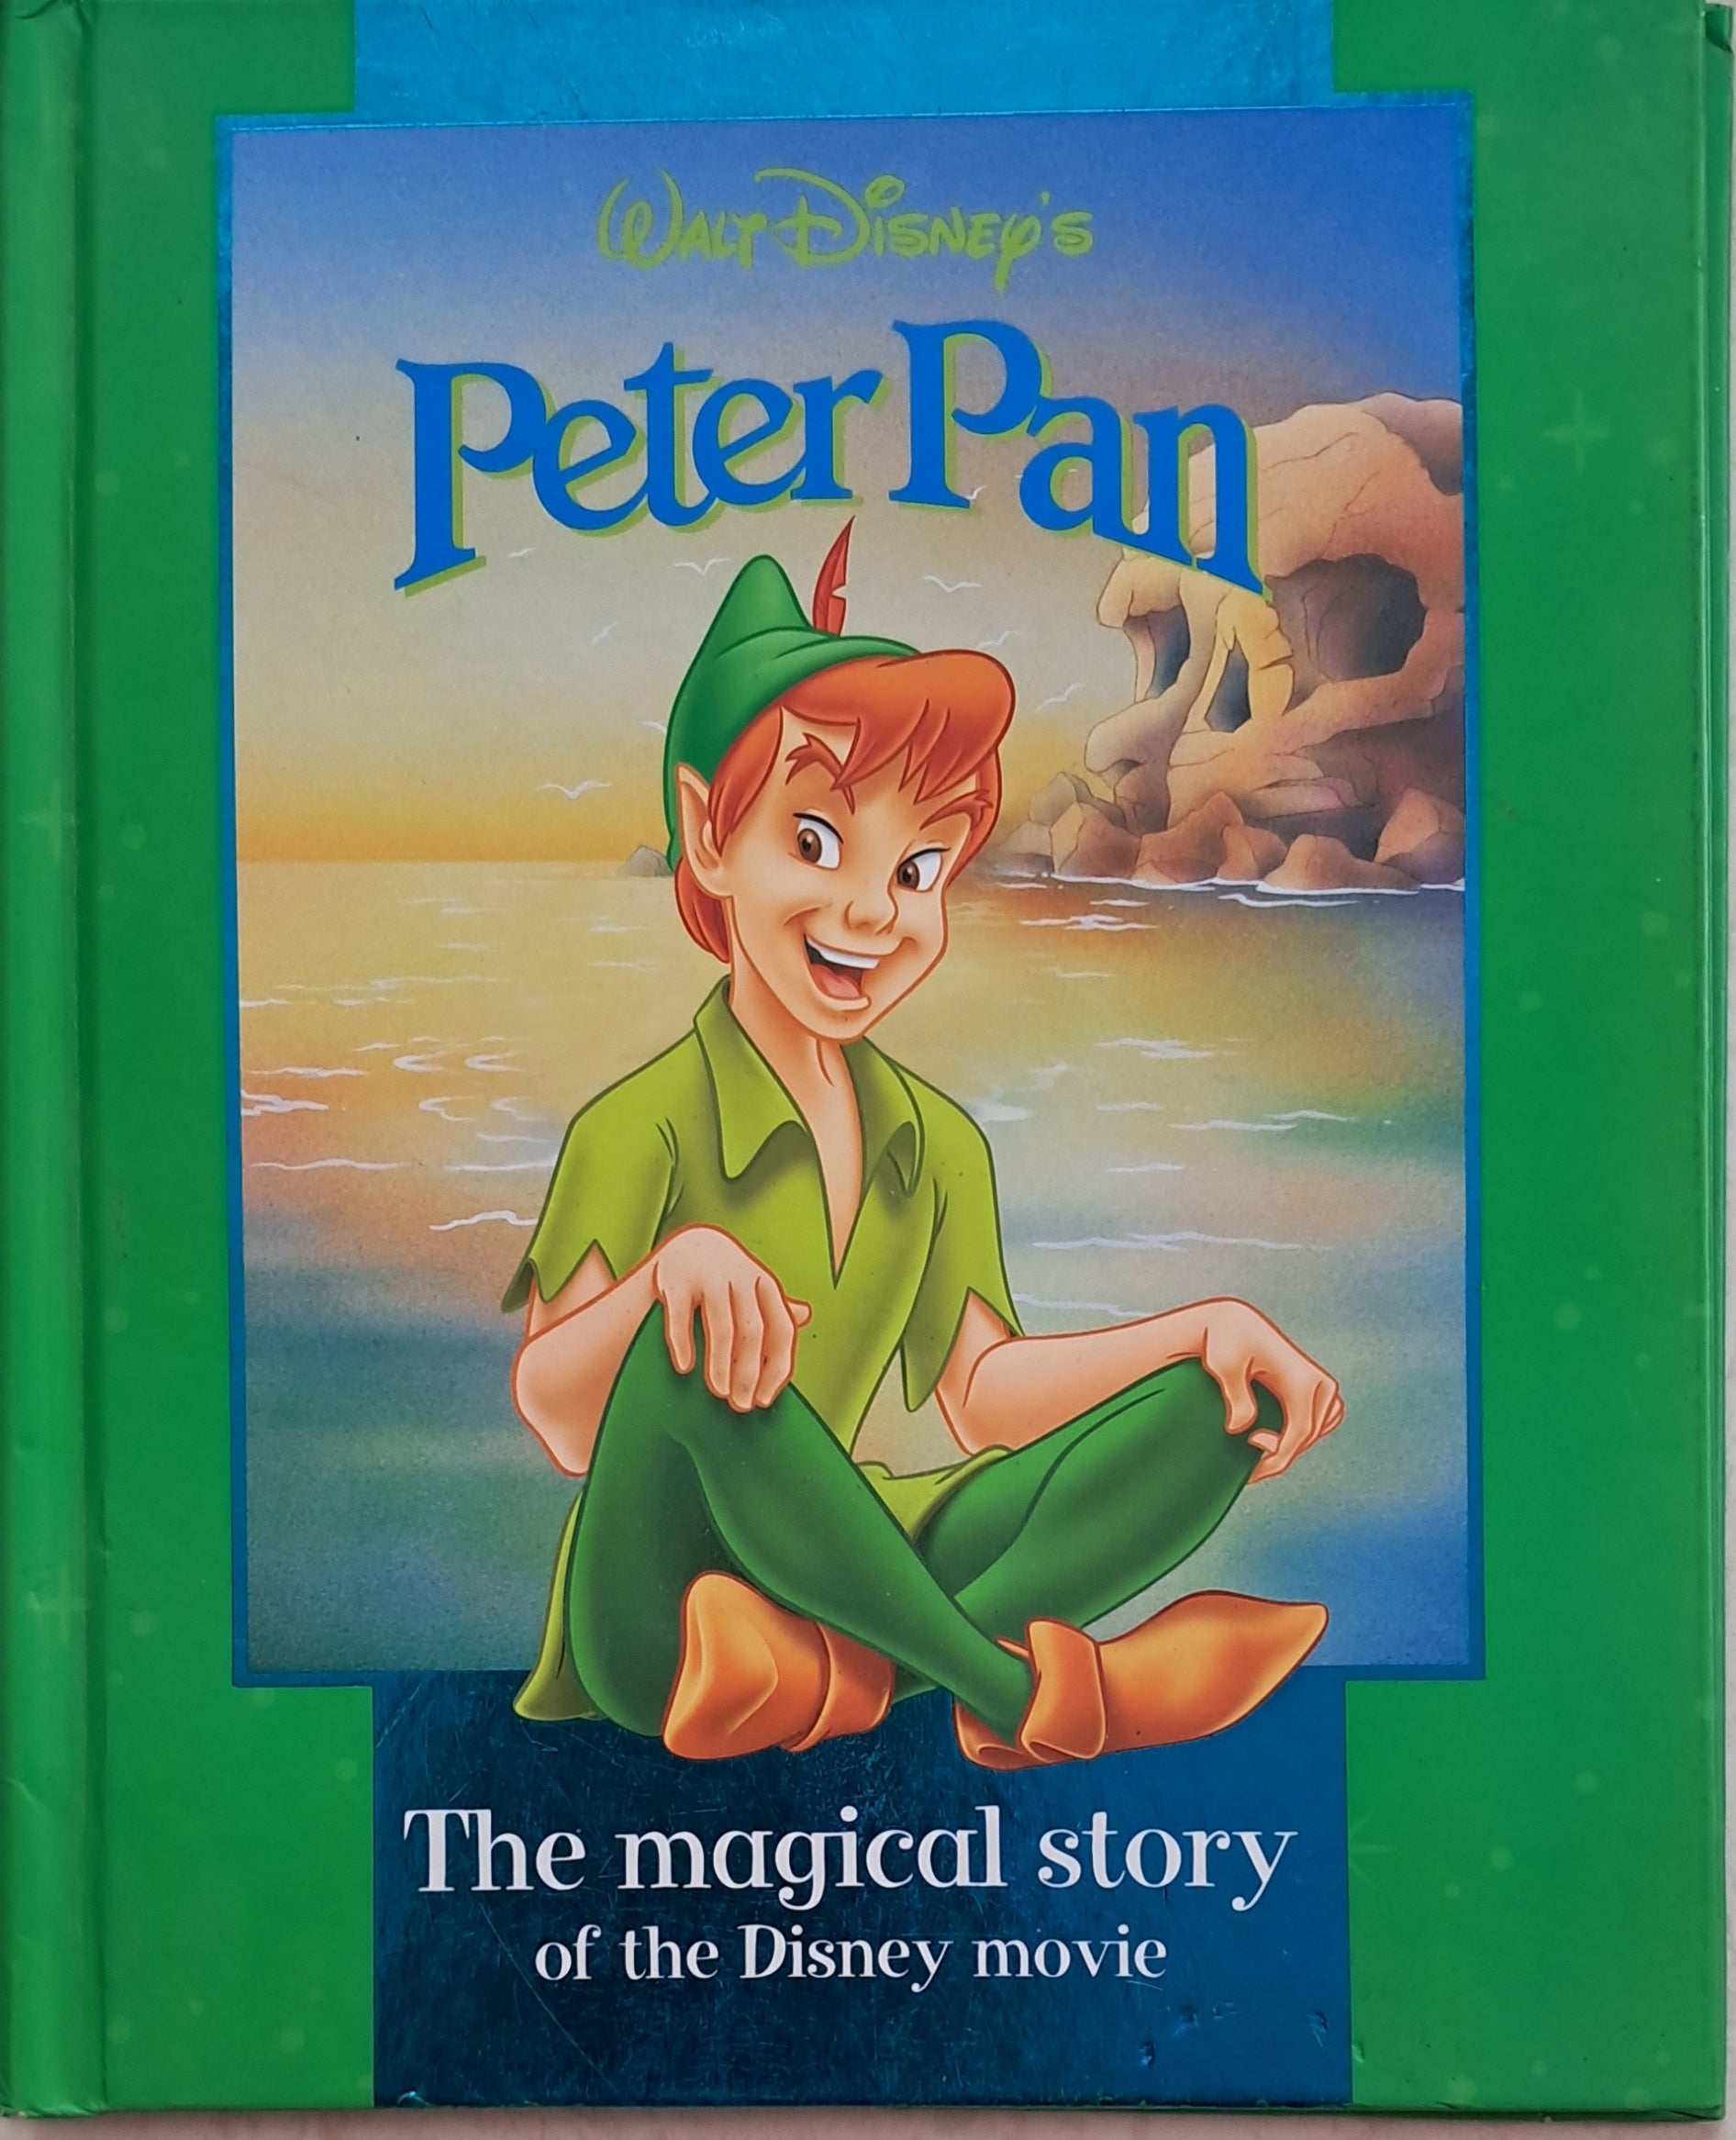 peter pan animated movie